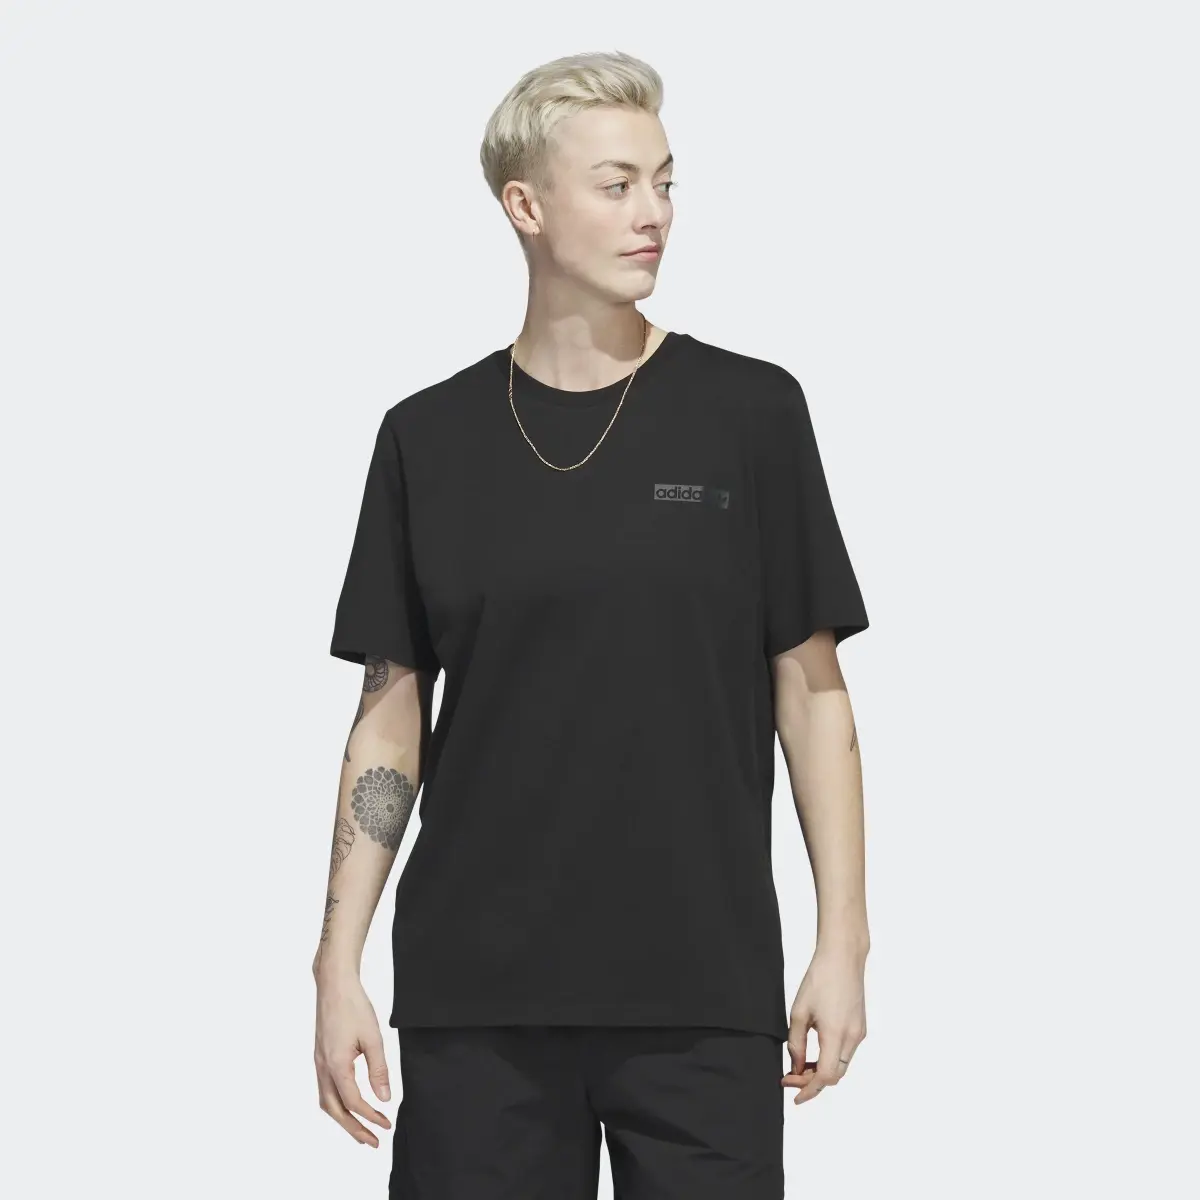 Adidas T-shirt 4.0 Circle. 2